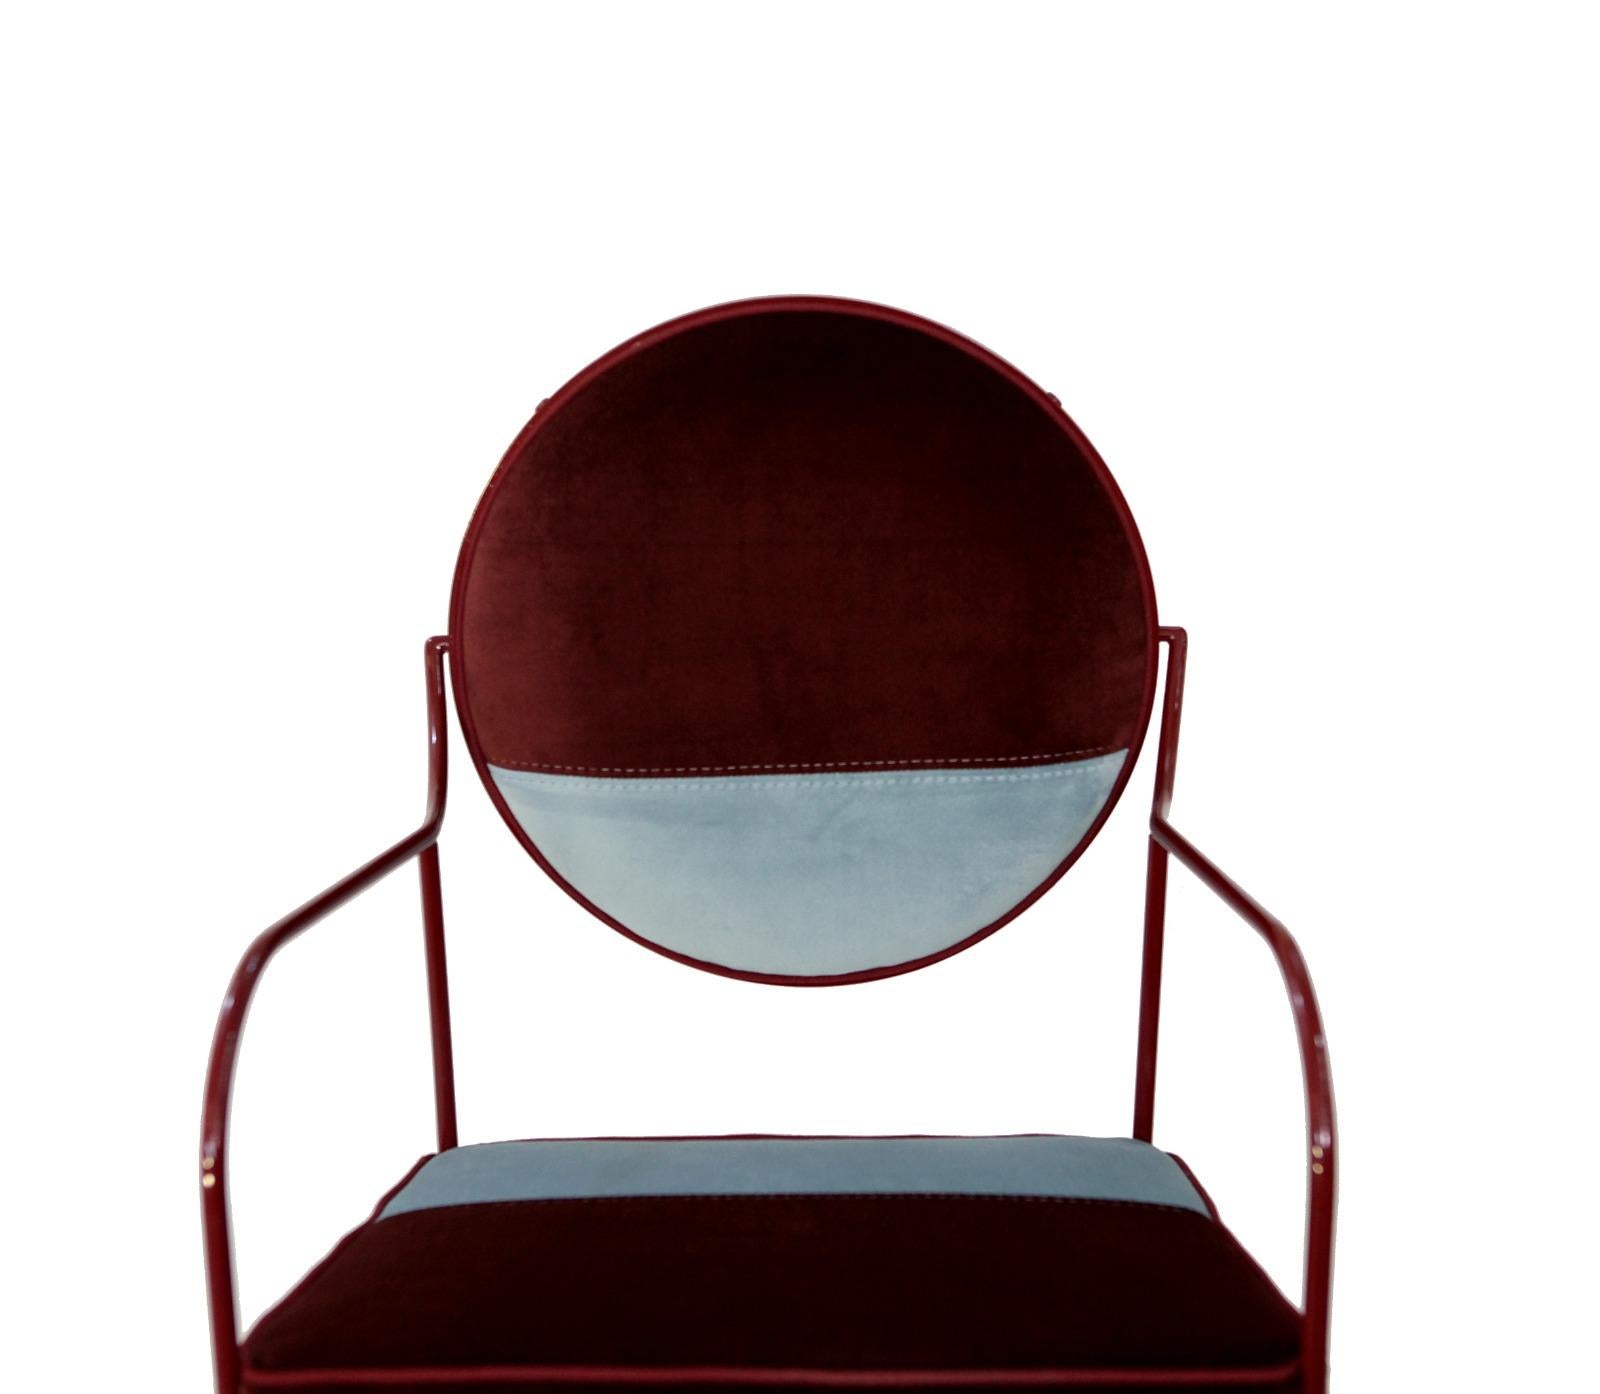 Cette chaise étonnante est fabriquée en fer avec des pieds en laiton. Le fer est revêtu d'une couche de poudre et cuit au four dans la couleur Ral, tandis que le dossier peut pivoter sur son propre cadre pour obtenir l'inclinaison parfaite. Le tissu